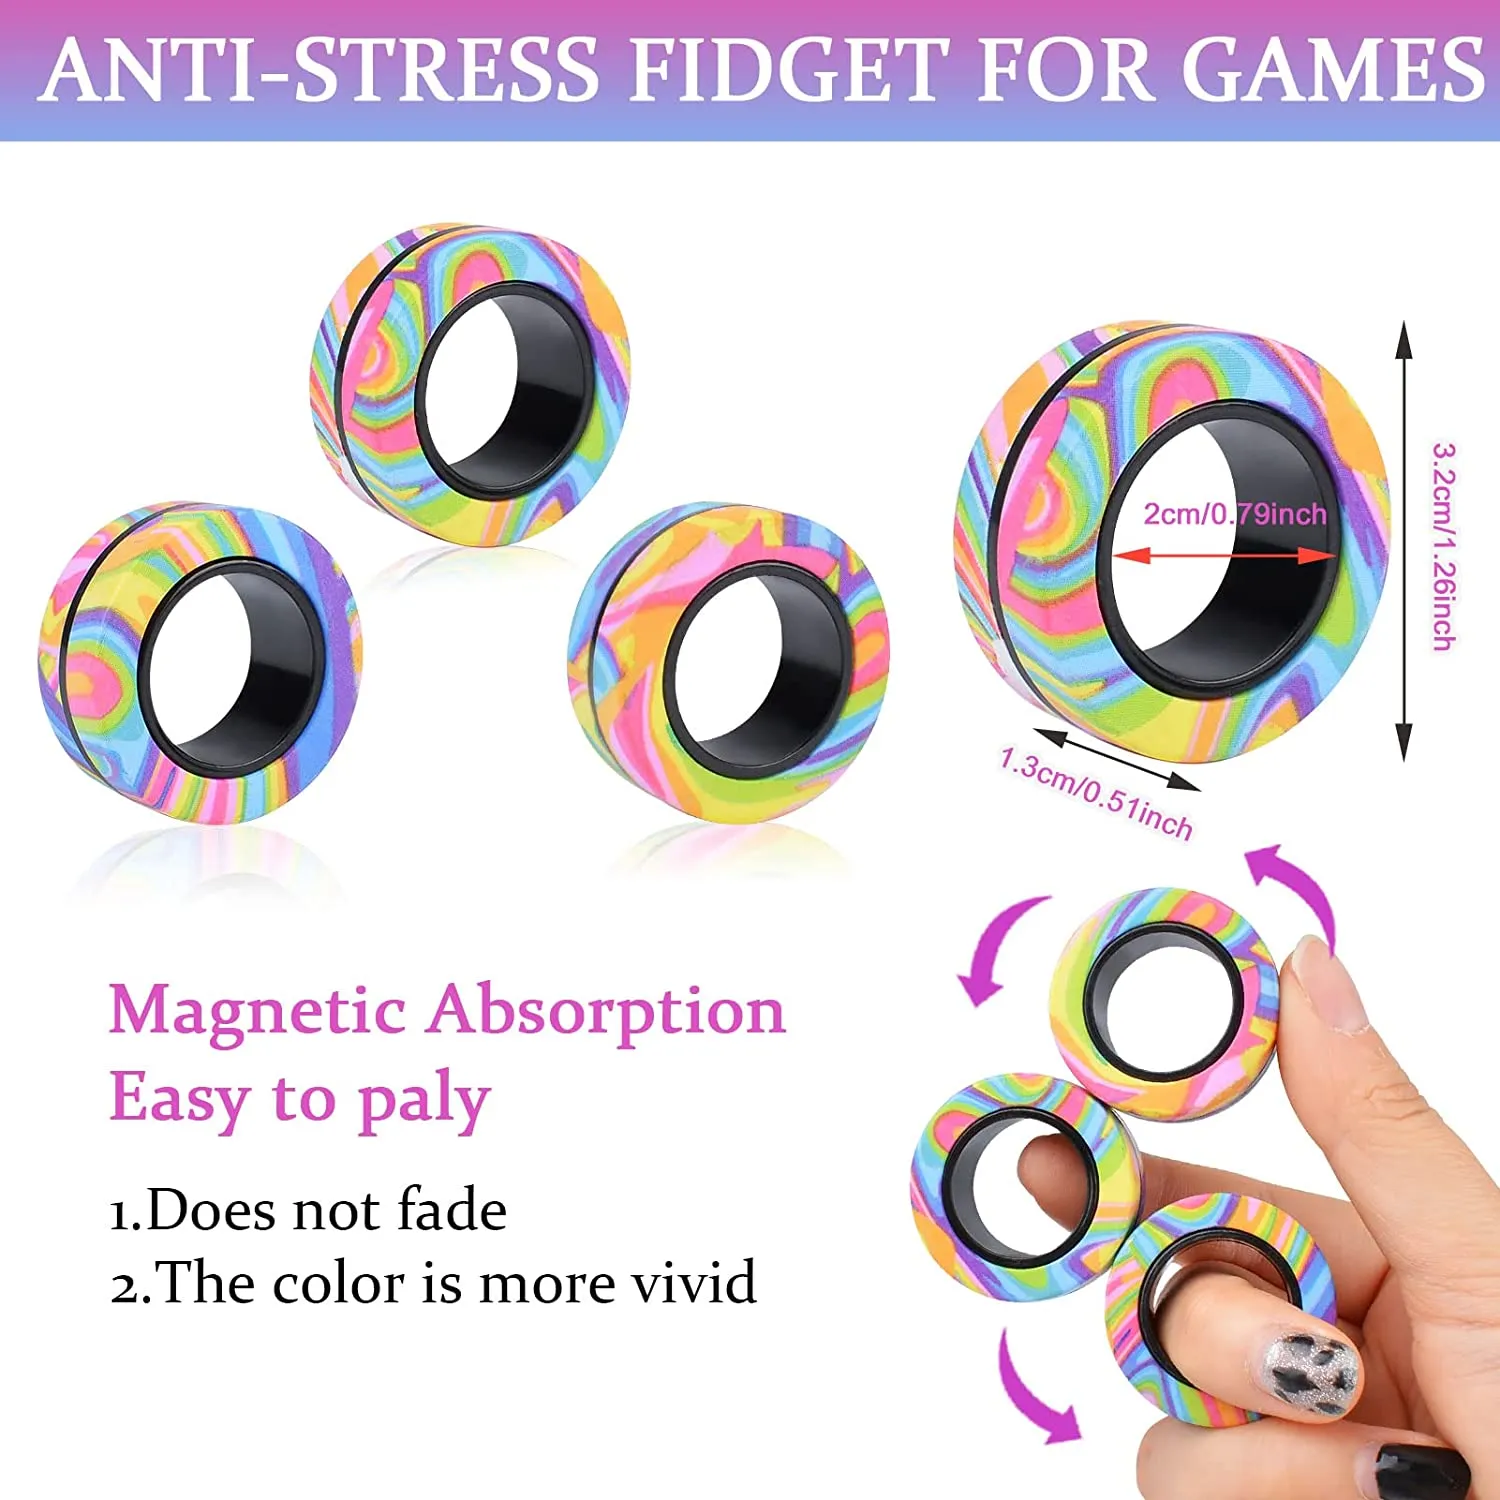  Juego de 9 piezas de anillos magnéticos para adultos, paquete  de juguetes antiestrés para TDAH, anillos giratorios para terapia de alivio  de la ansiedad, juguetes para adolescentes y niños de 9